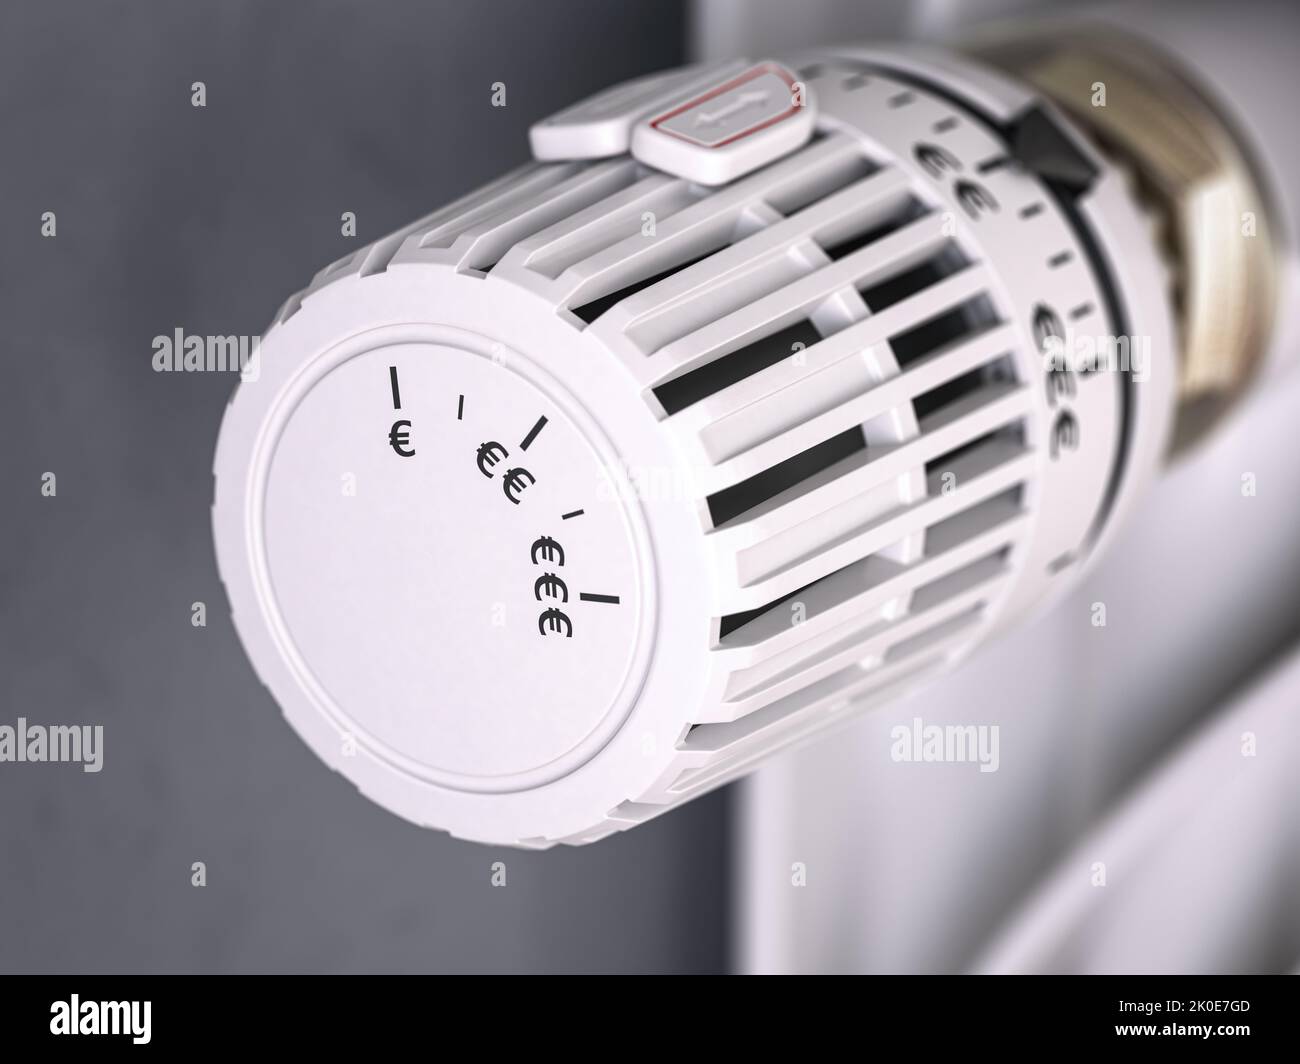 Termostato per radiatore di riscaldamento con simbolo euro. Crisi energetica, efficienza energetica e aumento dei costi di riscaldamento in Europa. illustrazione 3d Foto Stock